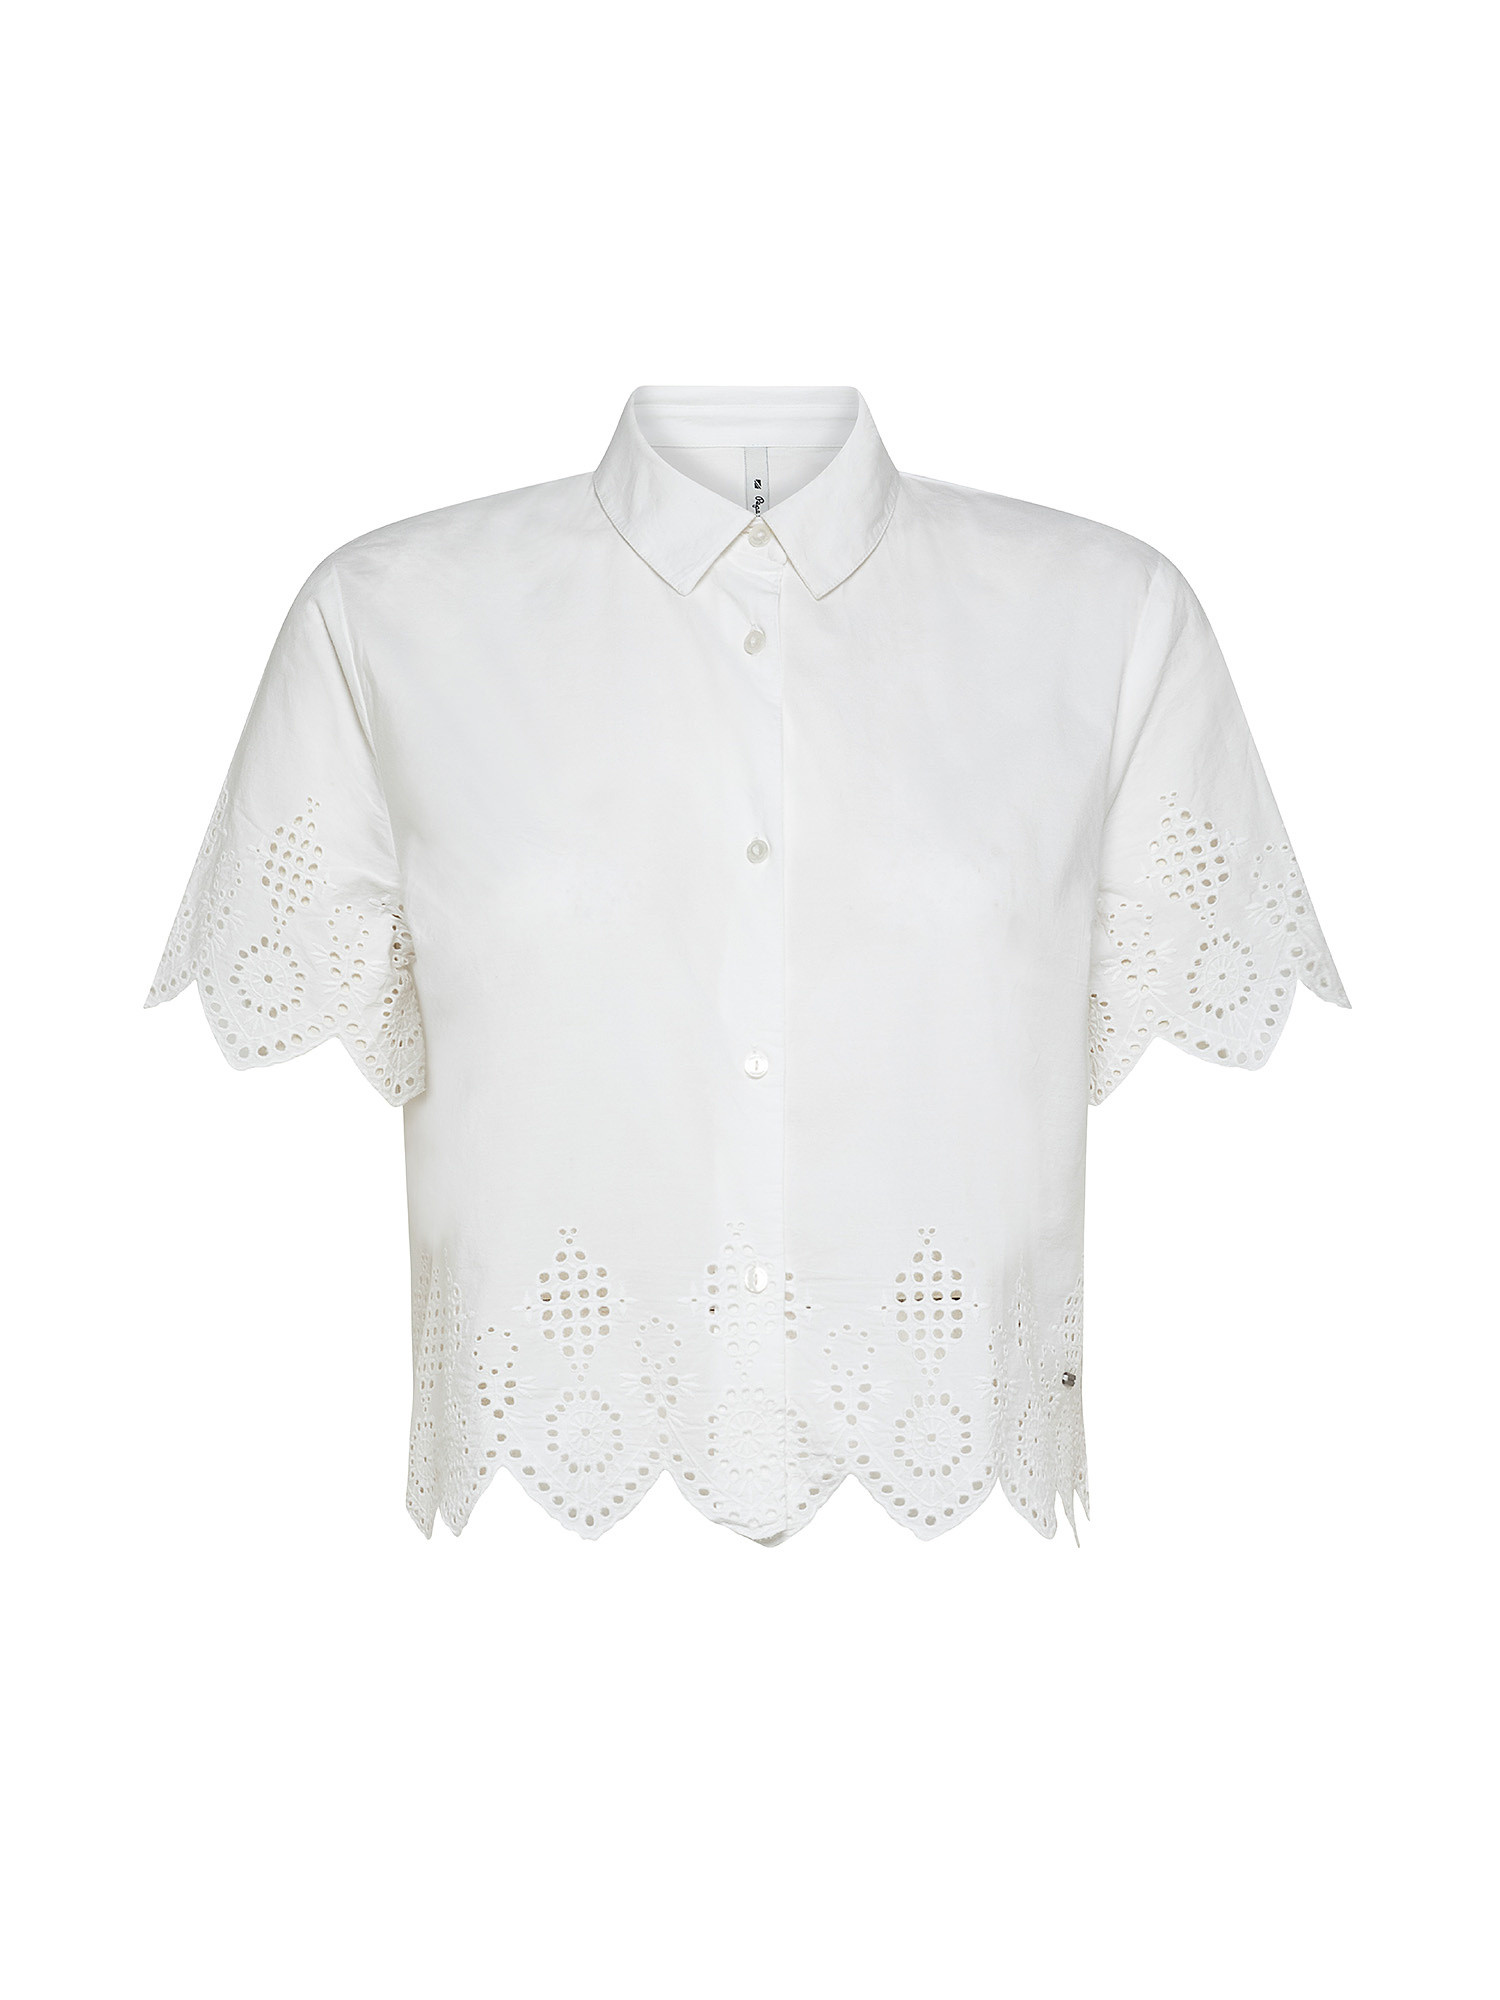 Camicia con dettaglio traforato laura, Bianco, large image number 0